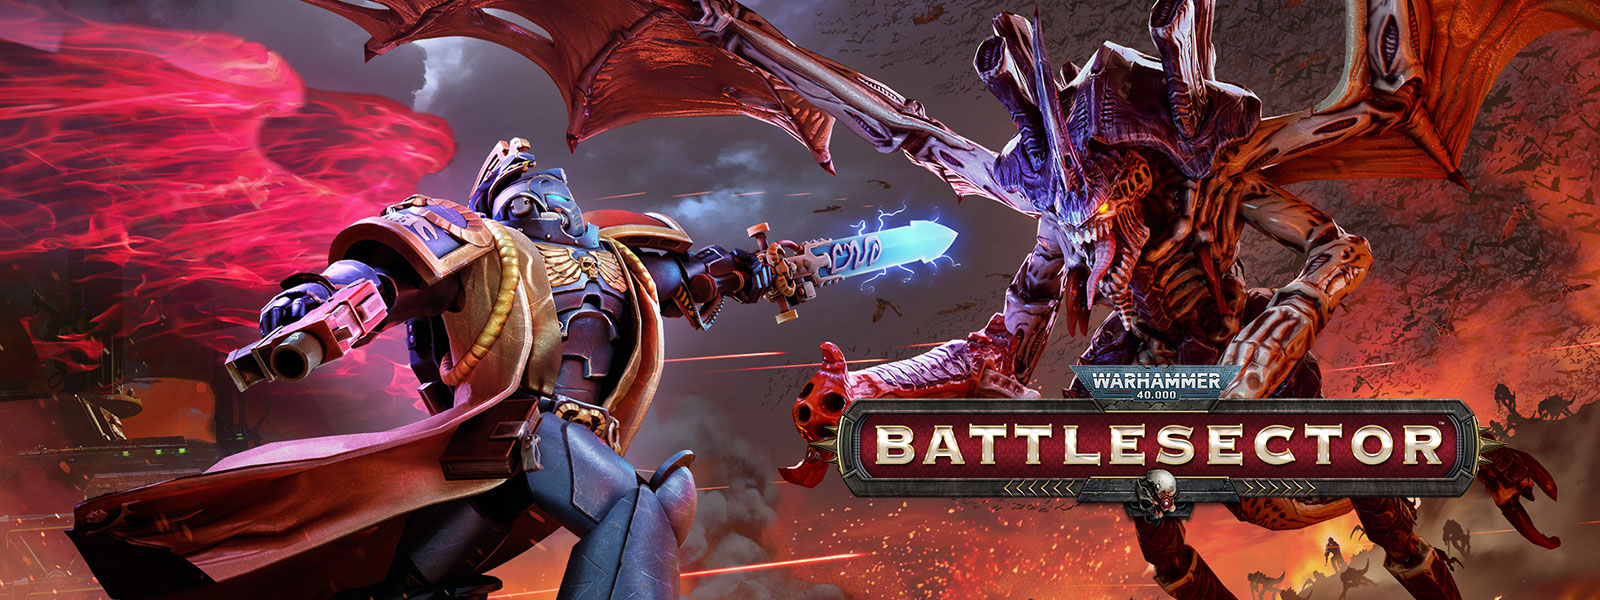 Warhammer 40,000: Battlesector, Een Librarian ontmoet de Hive Tyrant in de strijd.